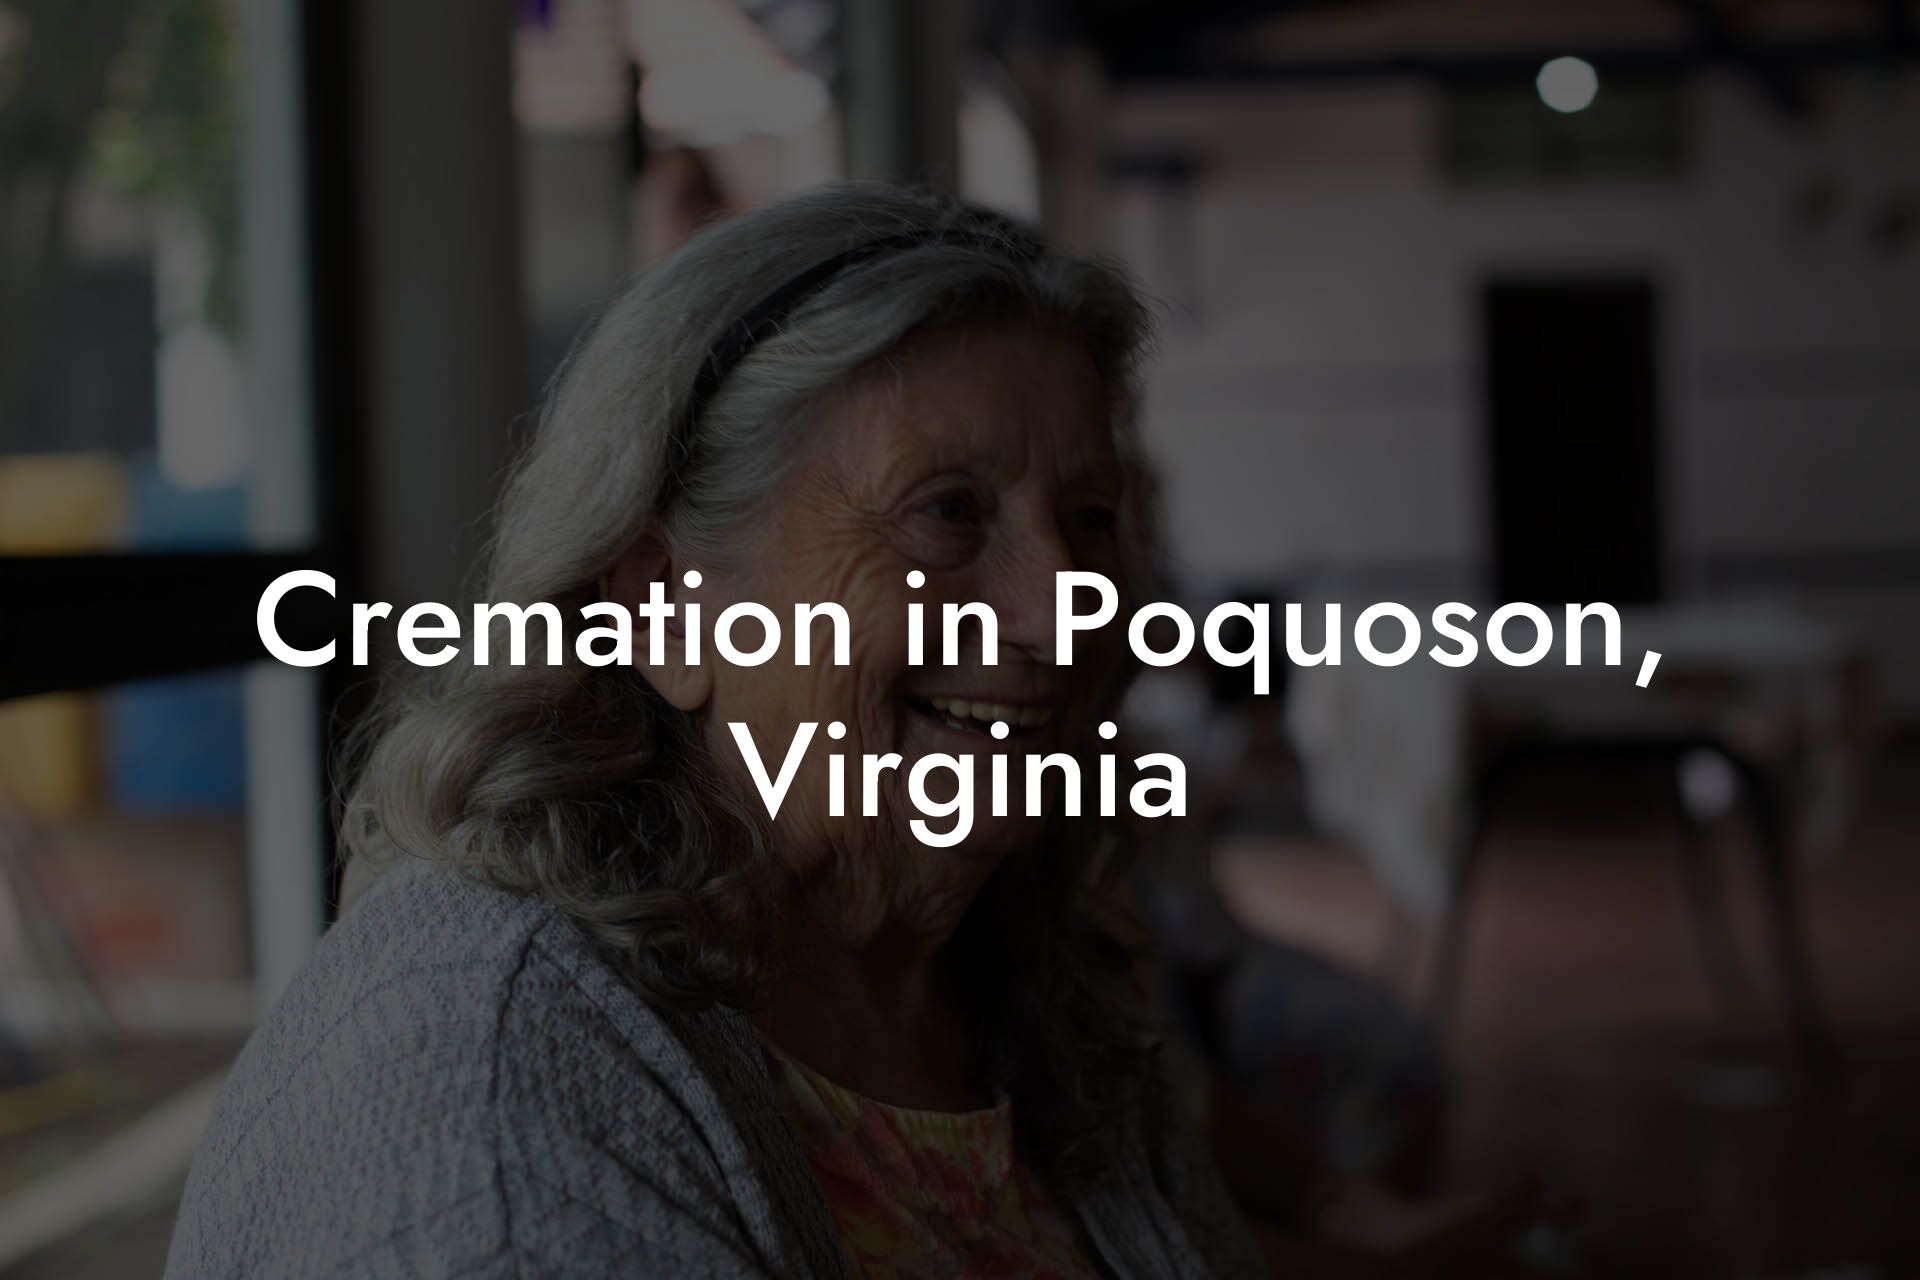 Cremation in Poquoson, Virginia